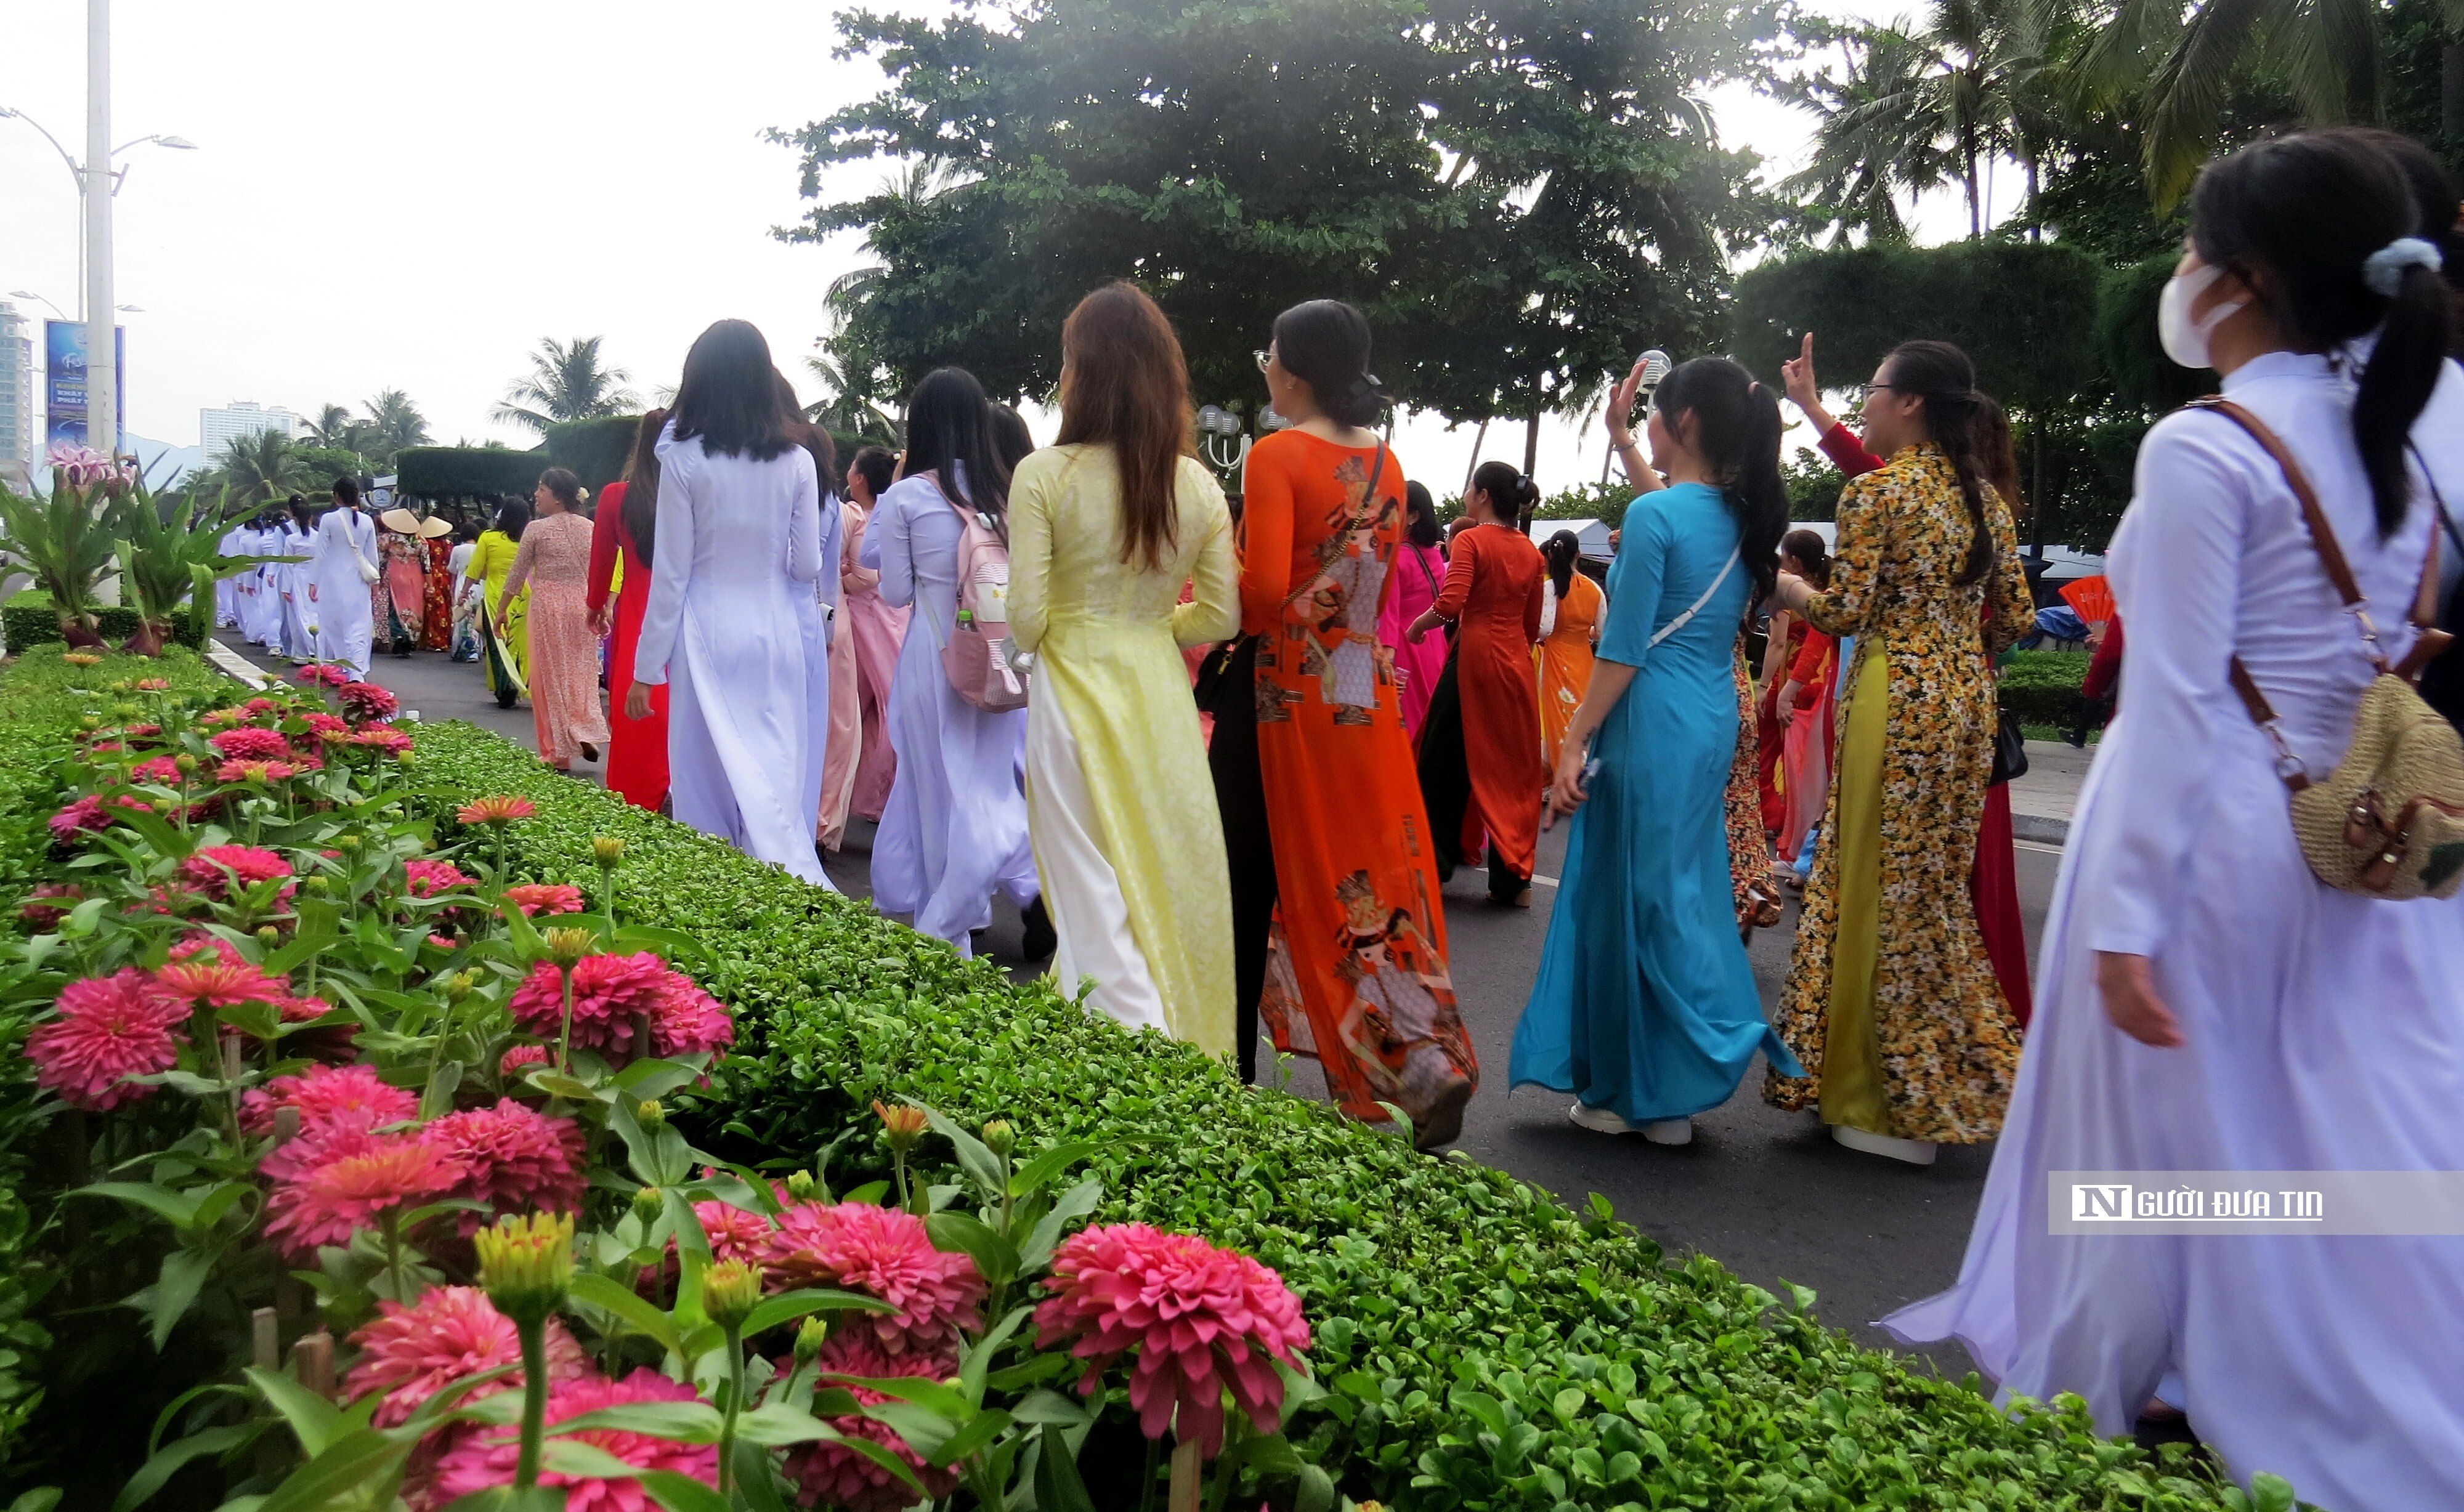 Sự kiện - Hơn 6.000 phụ nữ Khánh Hòa diễu hành tôn vinh áo dài trên phố (Hình 12).